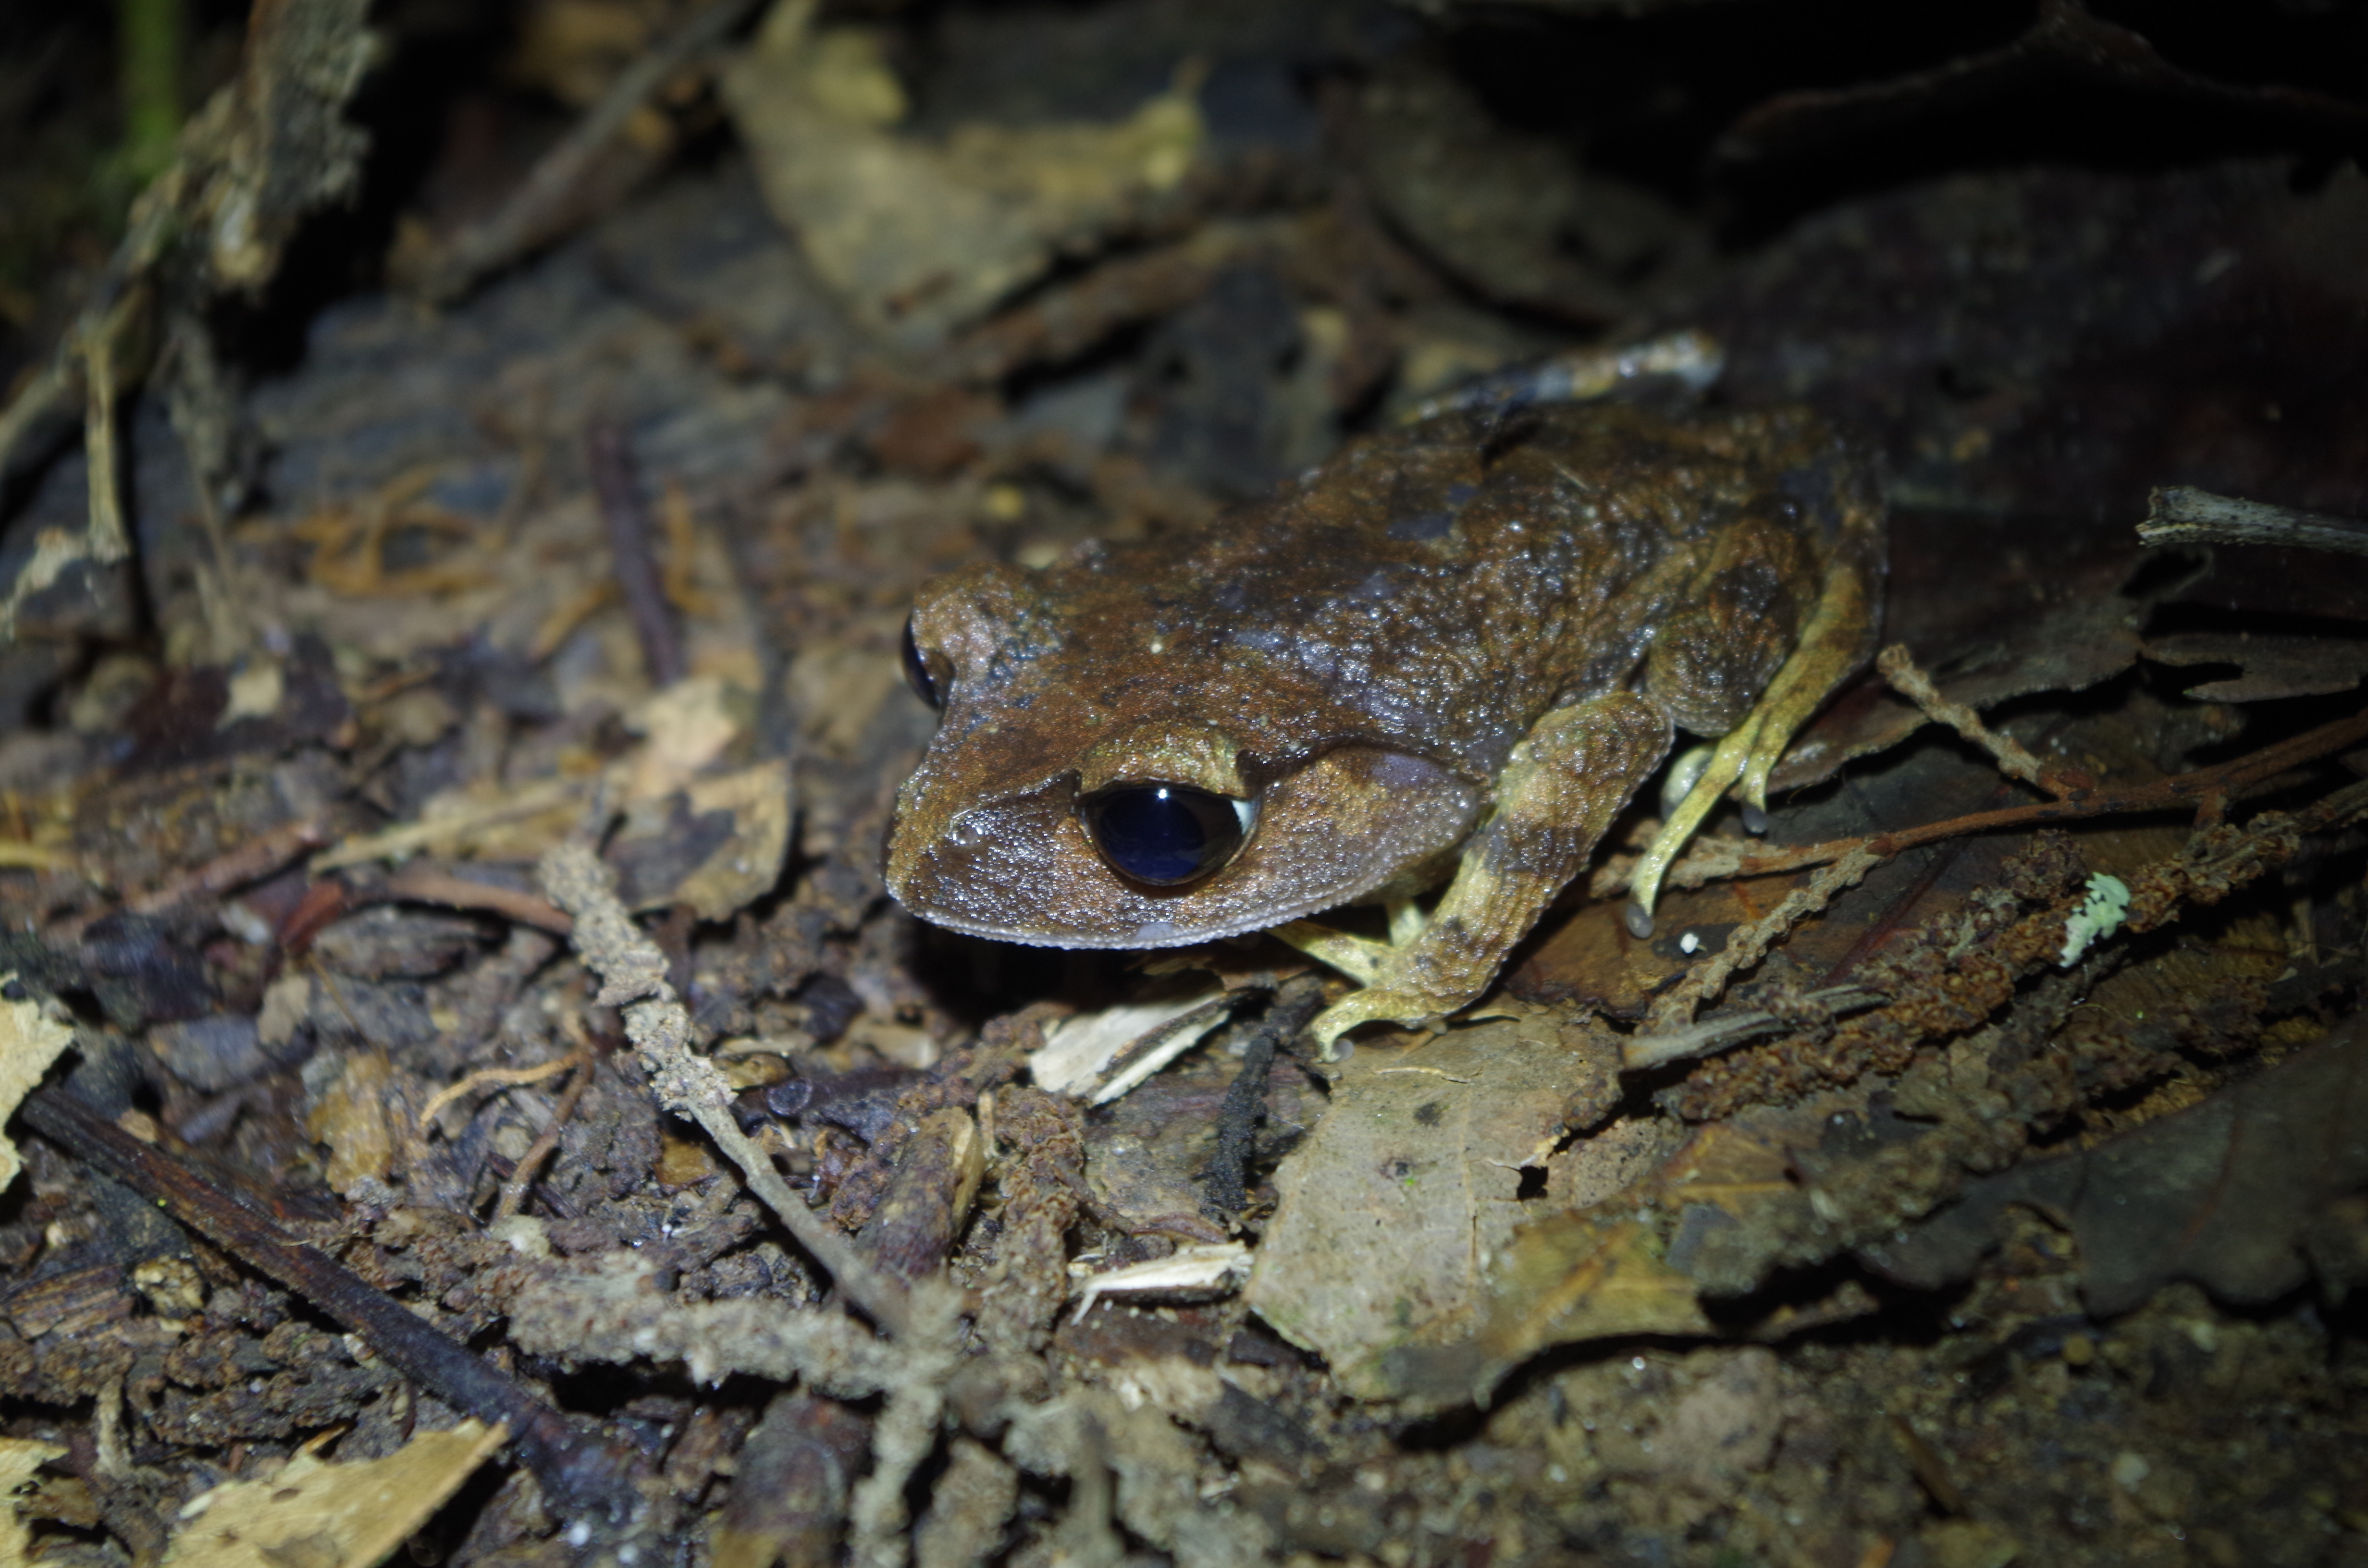 https://www.amphibians.org/wp-content/uploads/2020/05/Montane-Litter-Frog.jpg